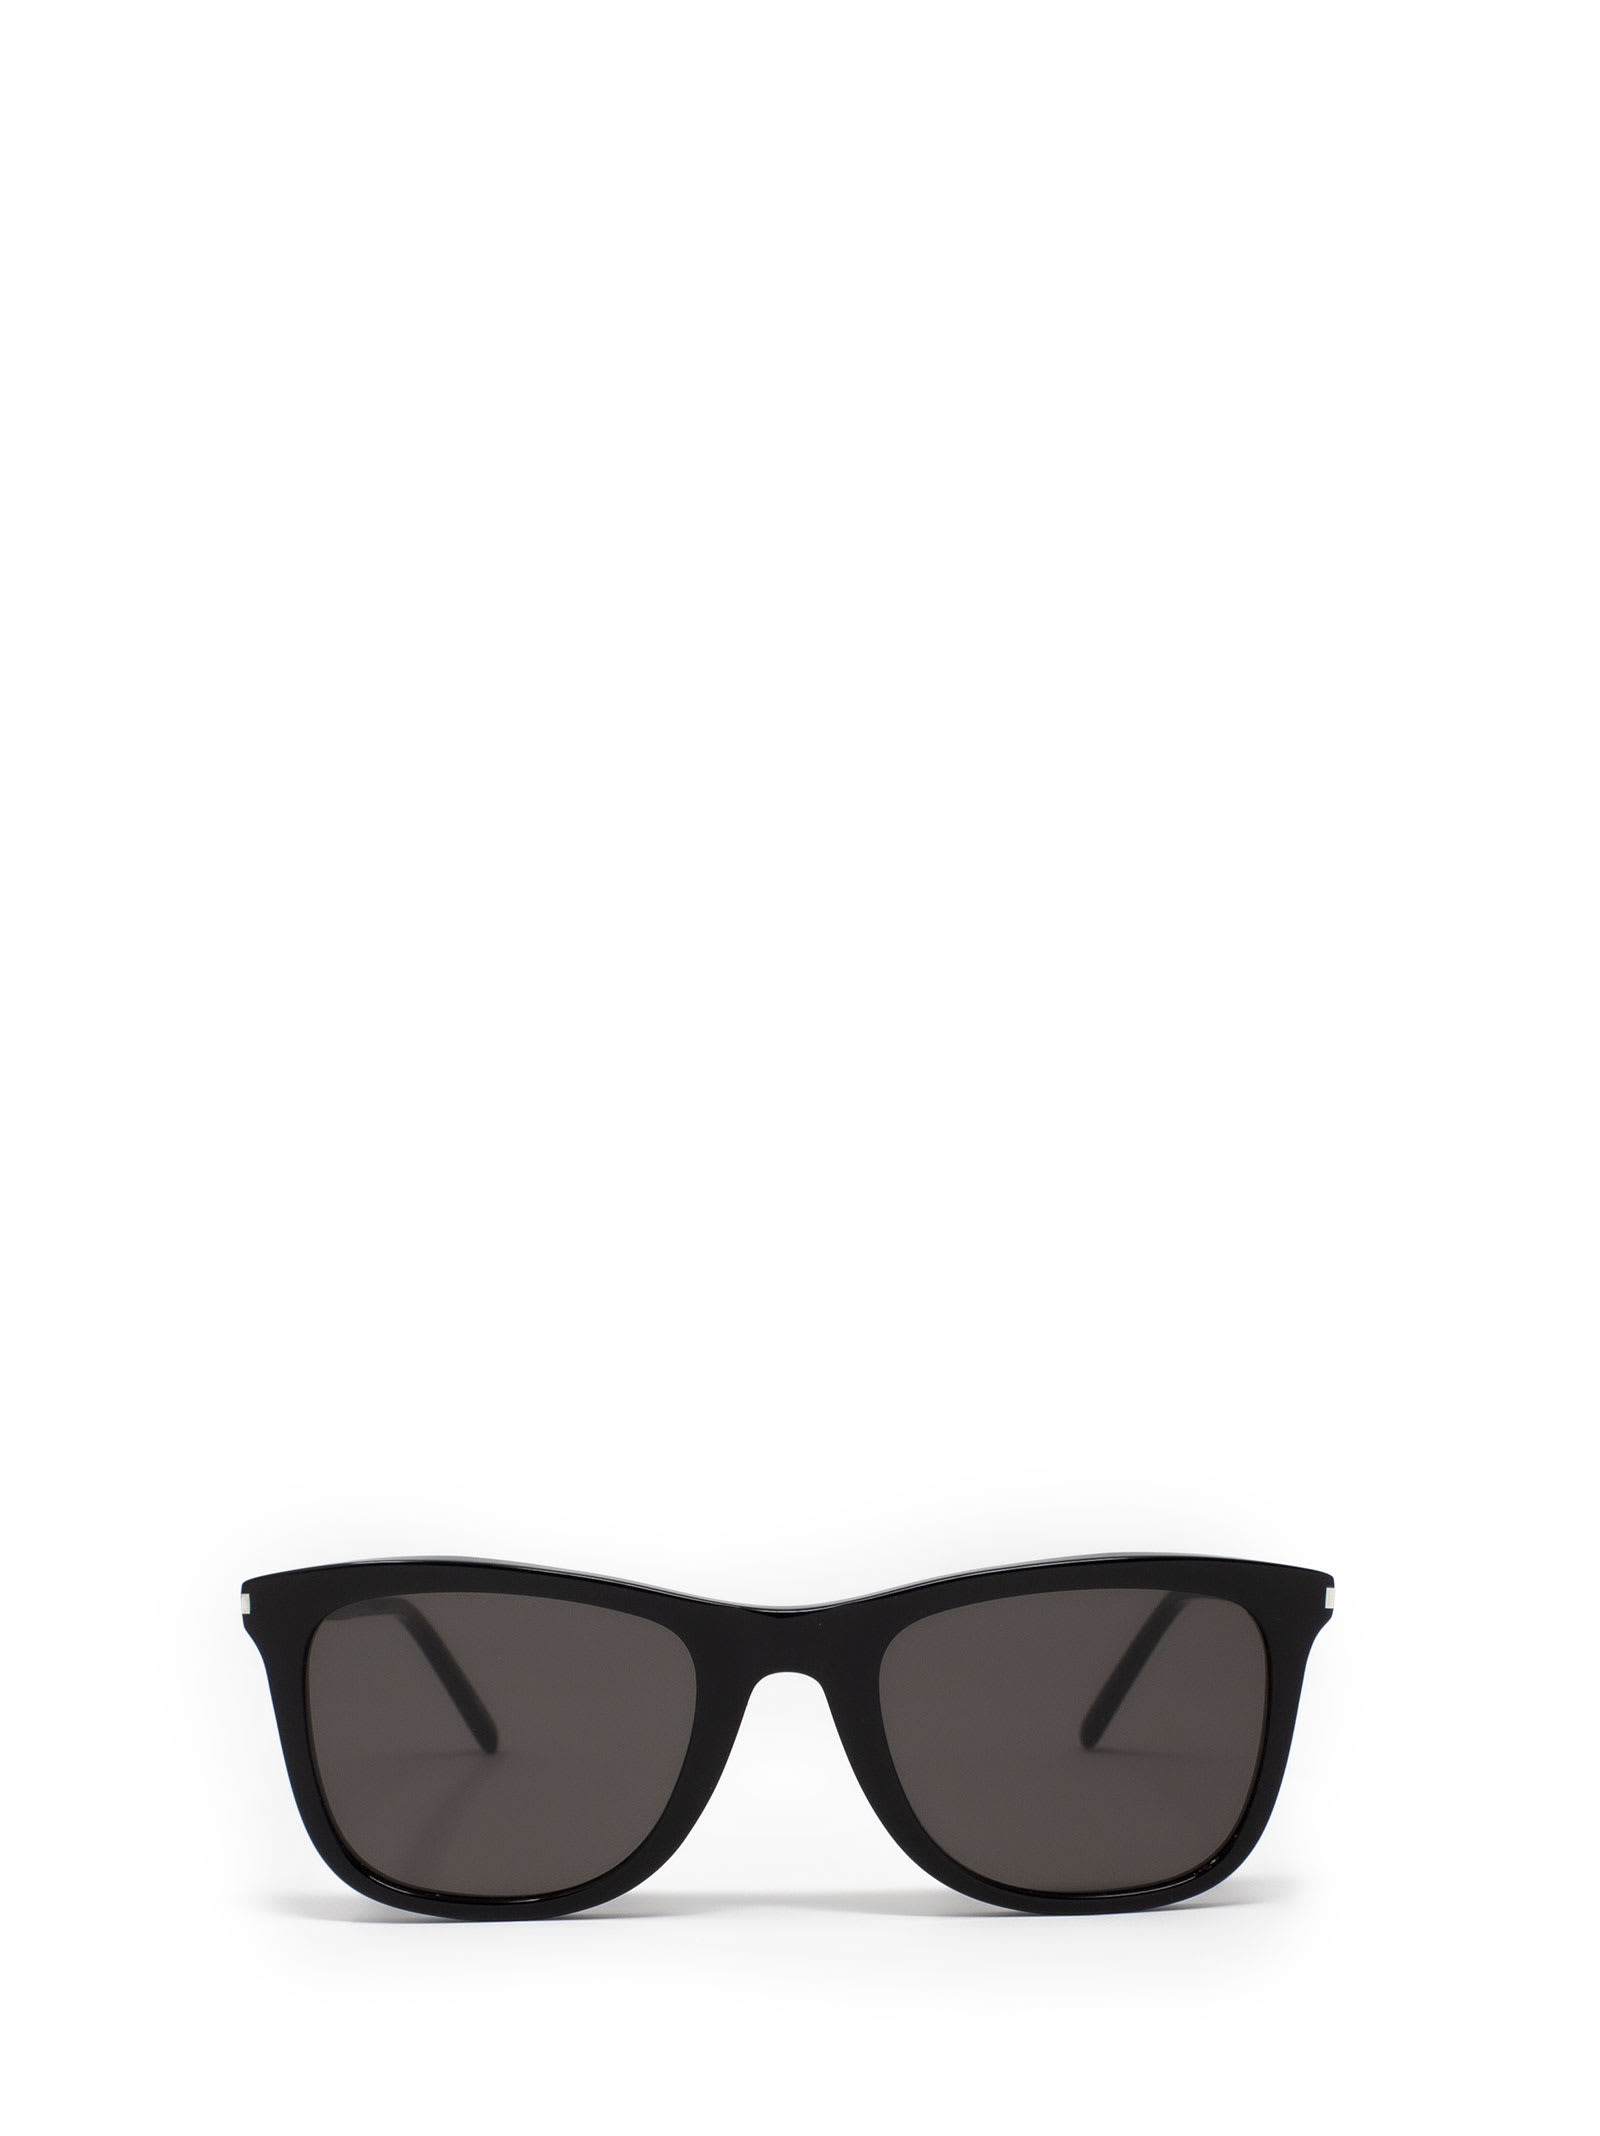 Saint Laurent Sunglasses In 001